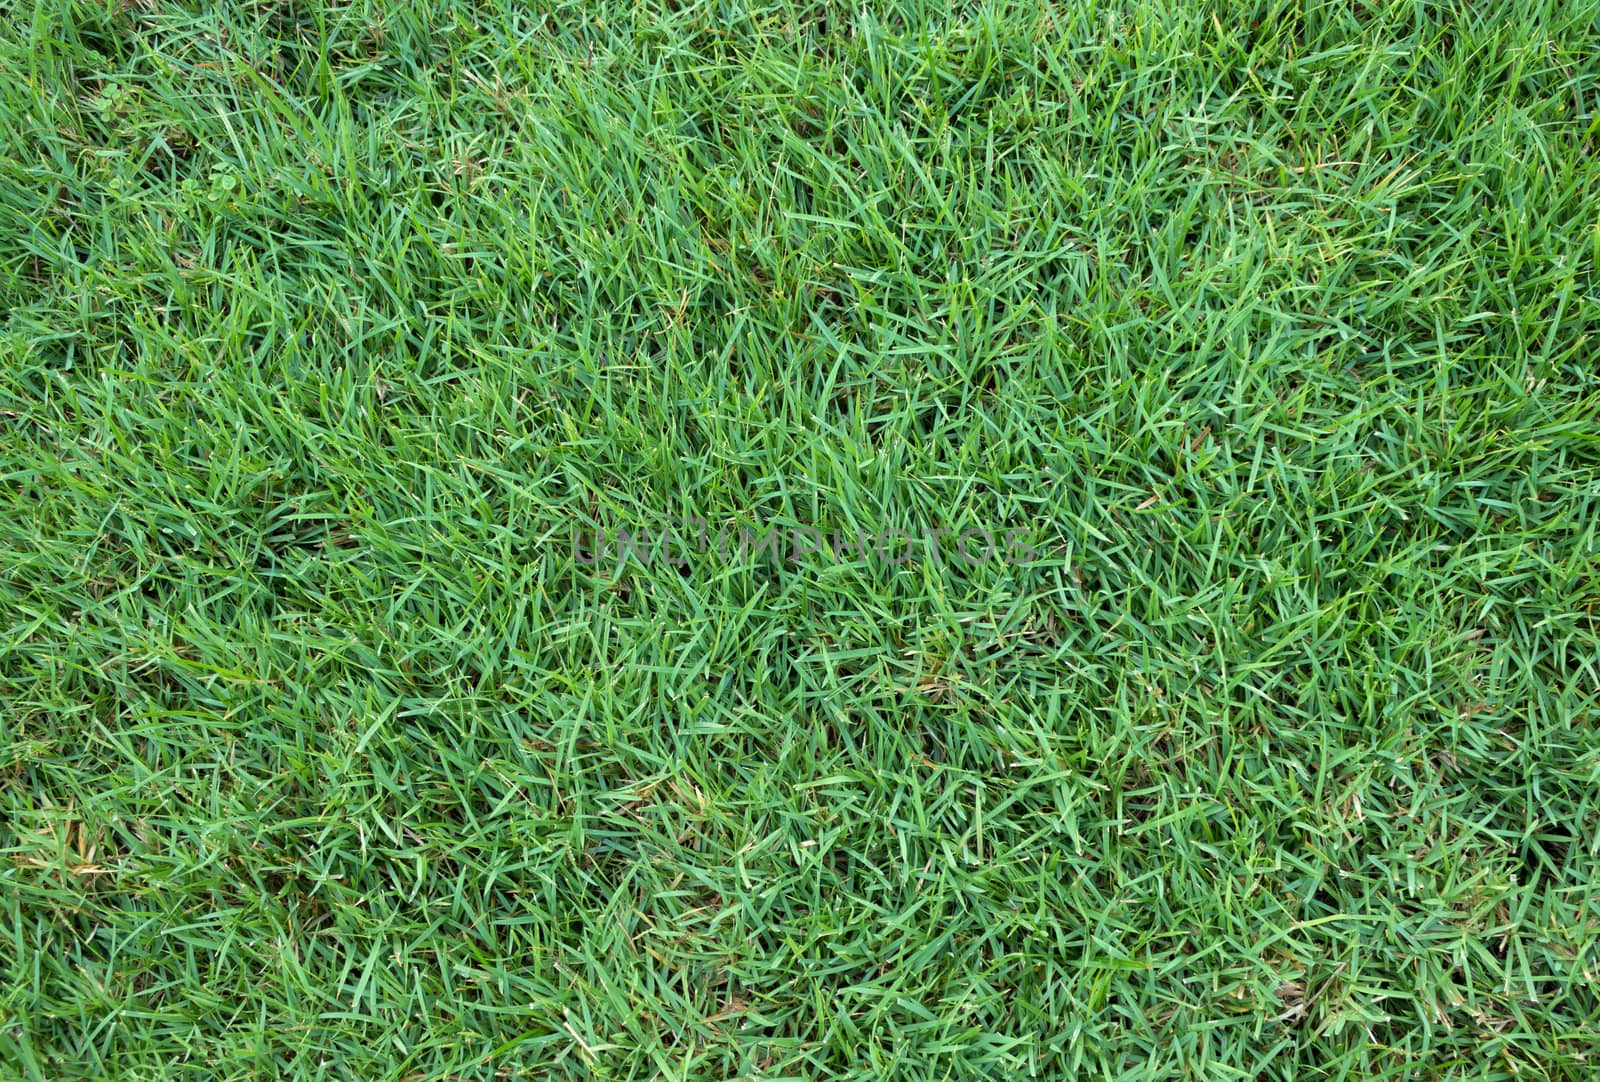 Green grass field background texture.